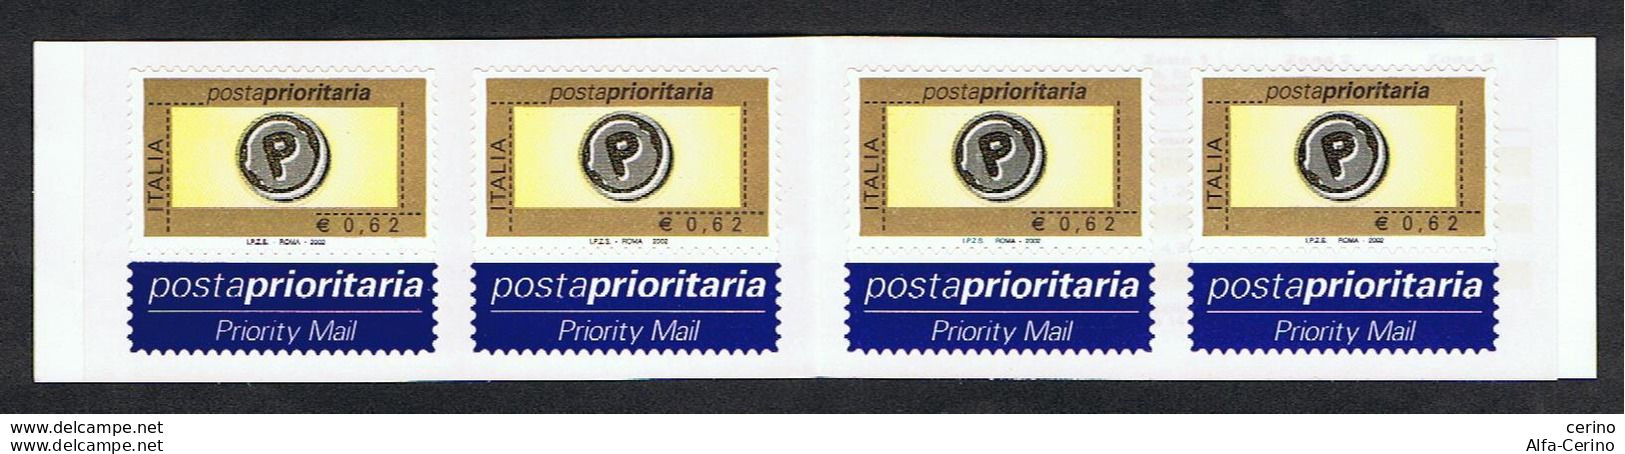 REPUBBLICA:  2002  LIBRETTO  POSTA  PRIORITARIA  -  €. 0,62 X 4  POLICROMO  -  SASS. 24 - Markenheftchen